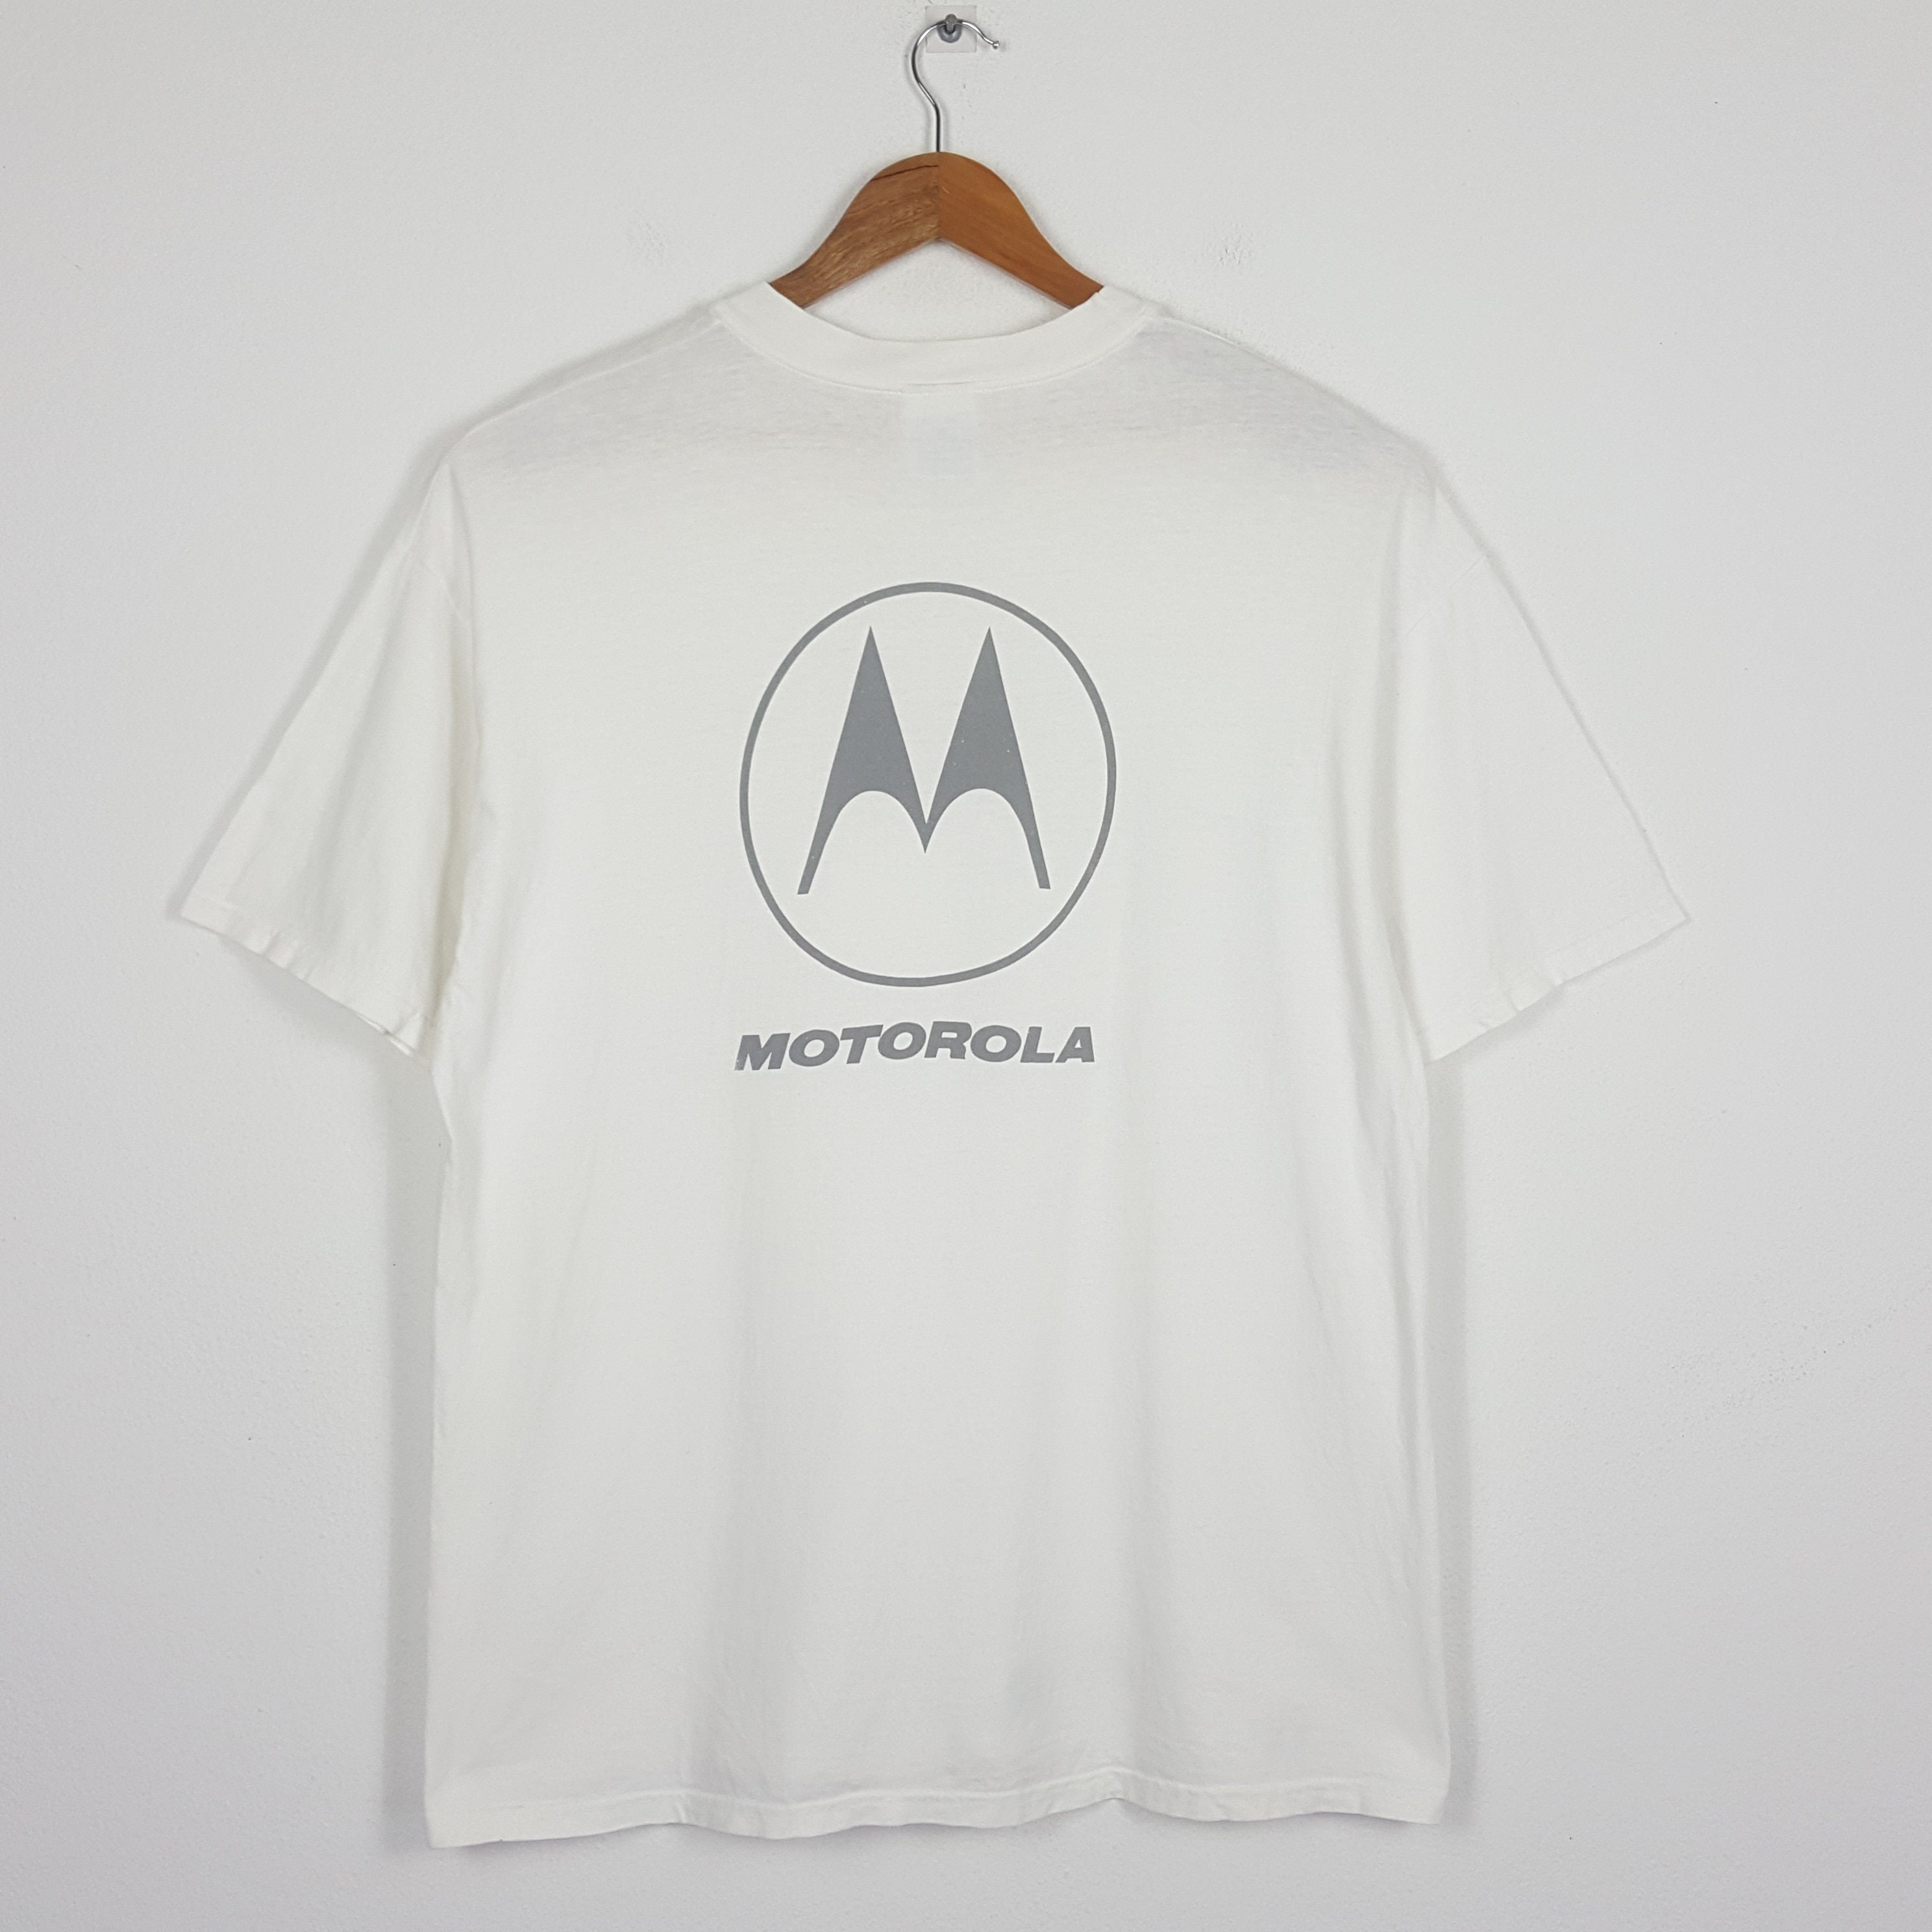 Motorola Shirt - Etsy